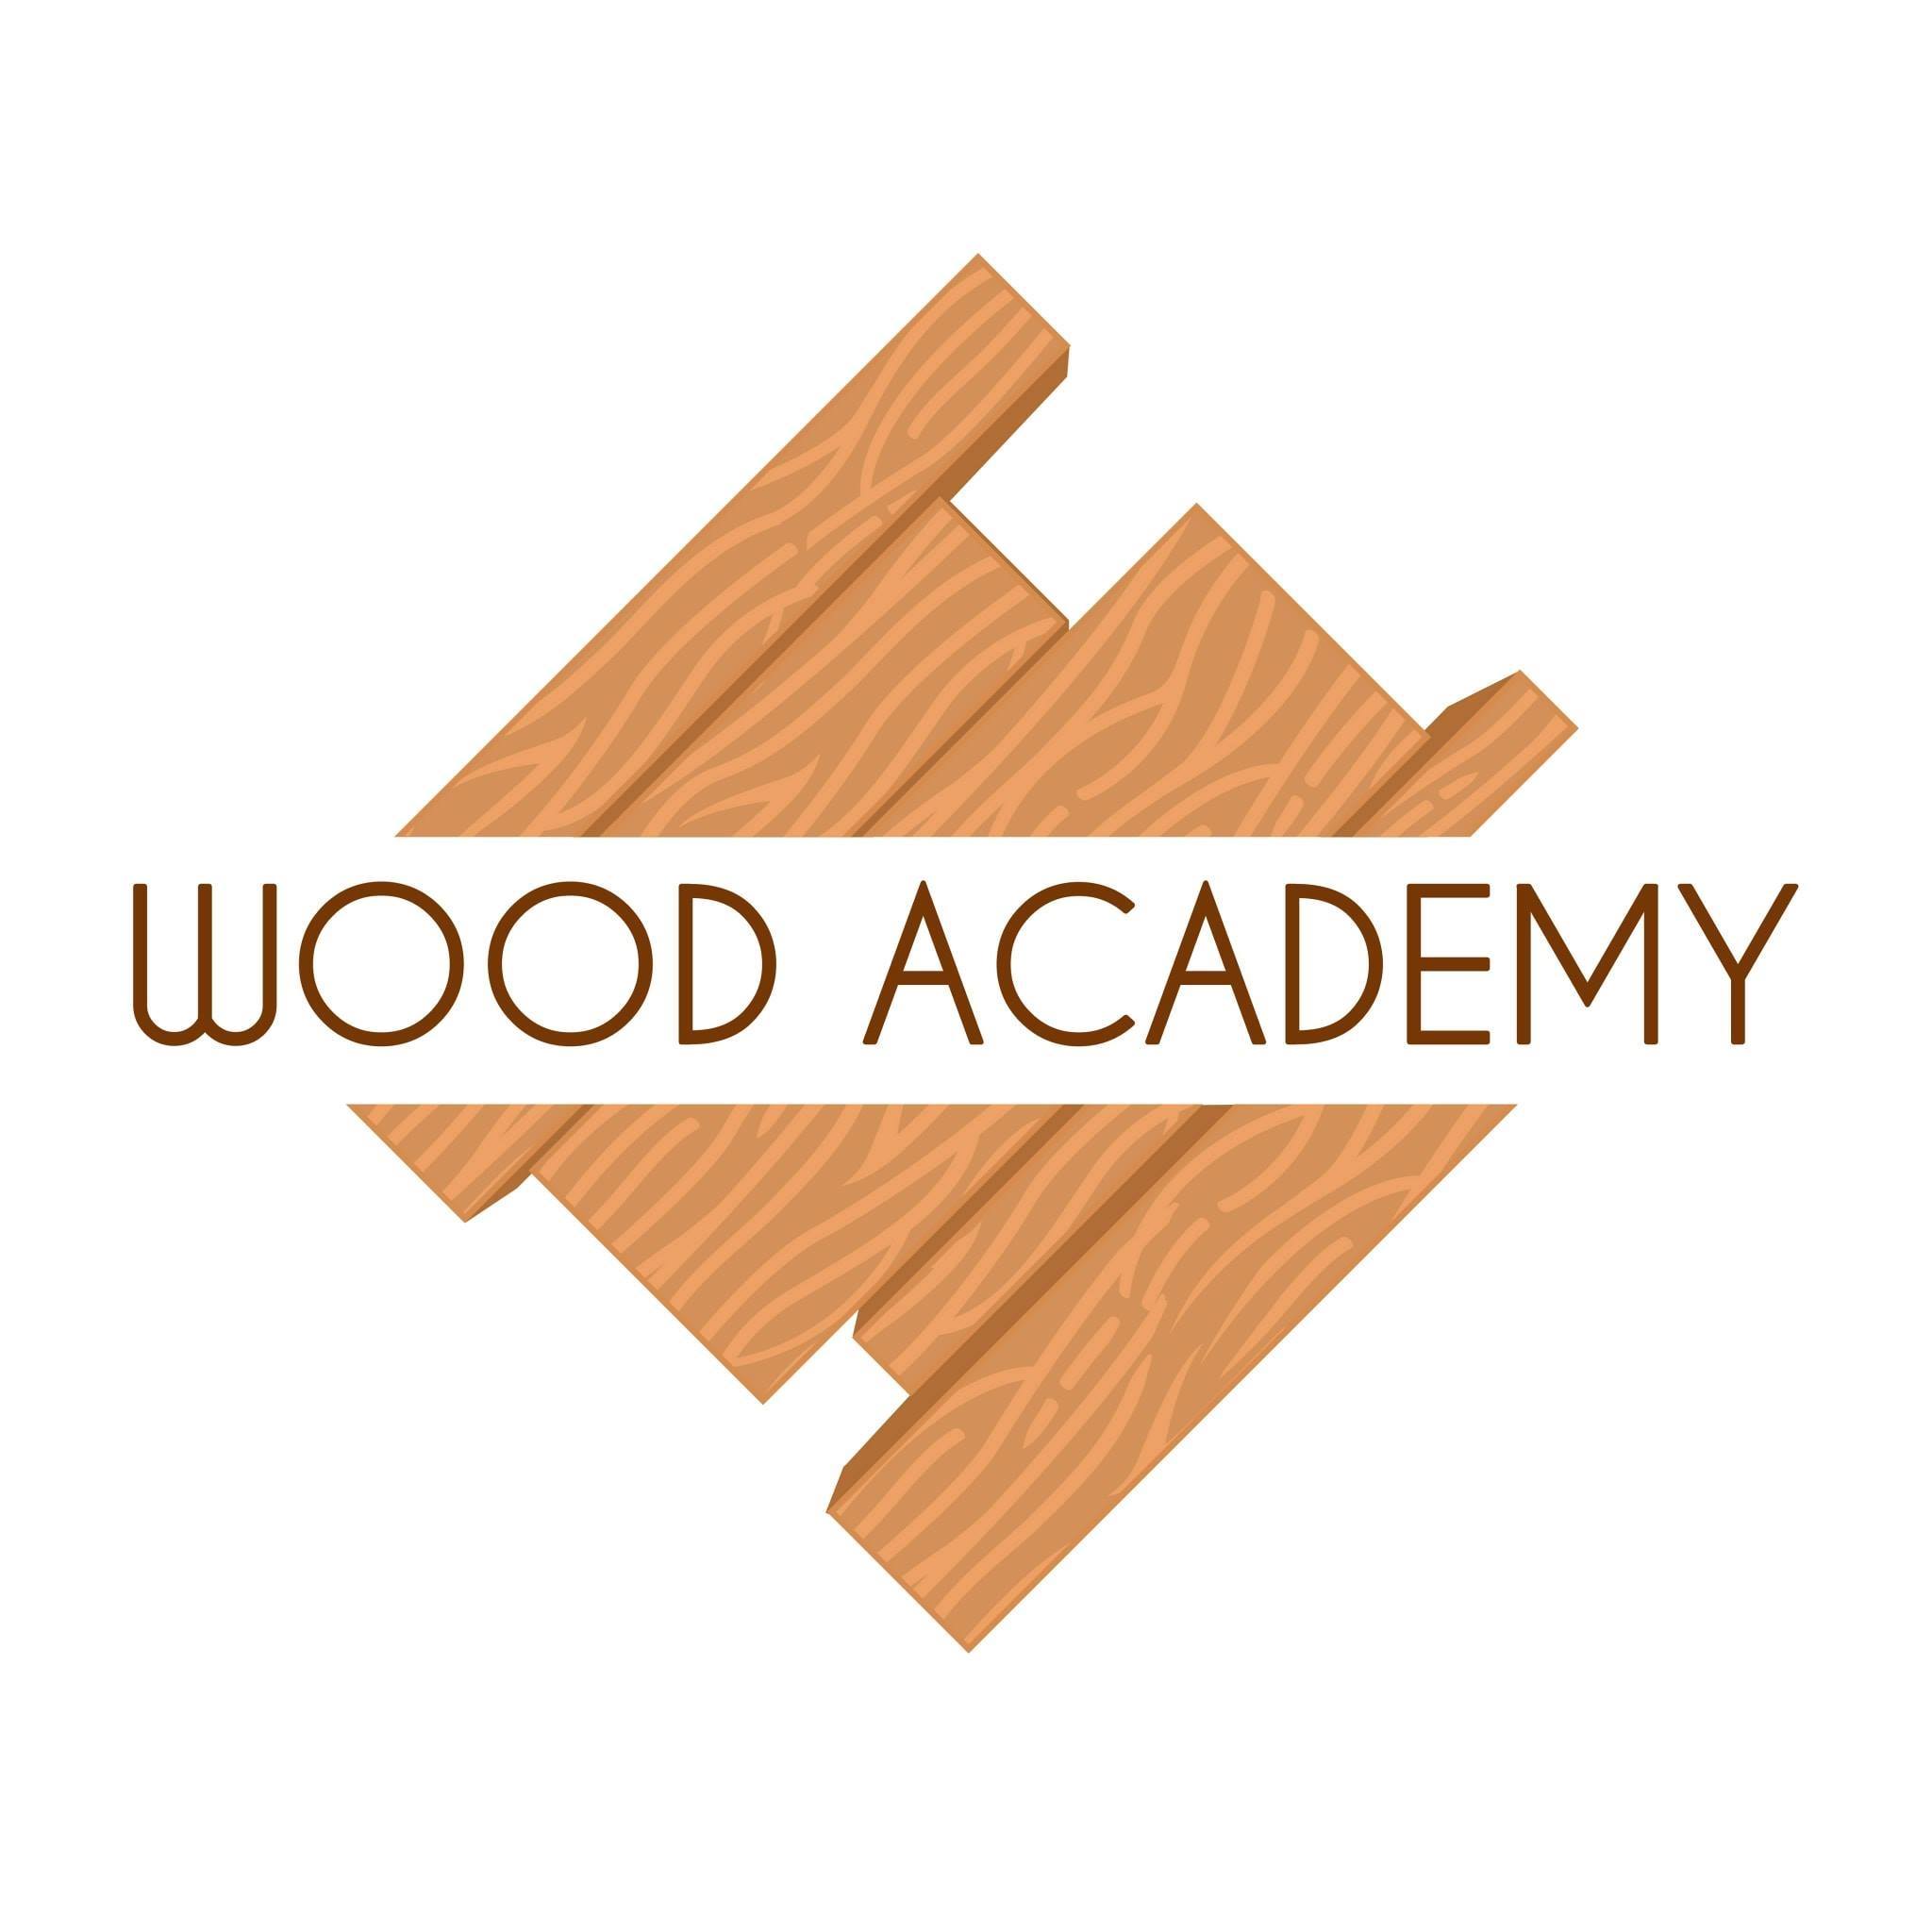 Wood Academy